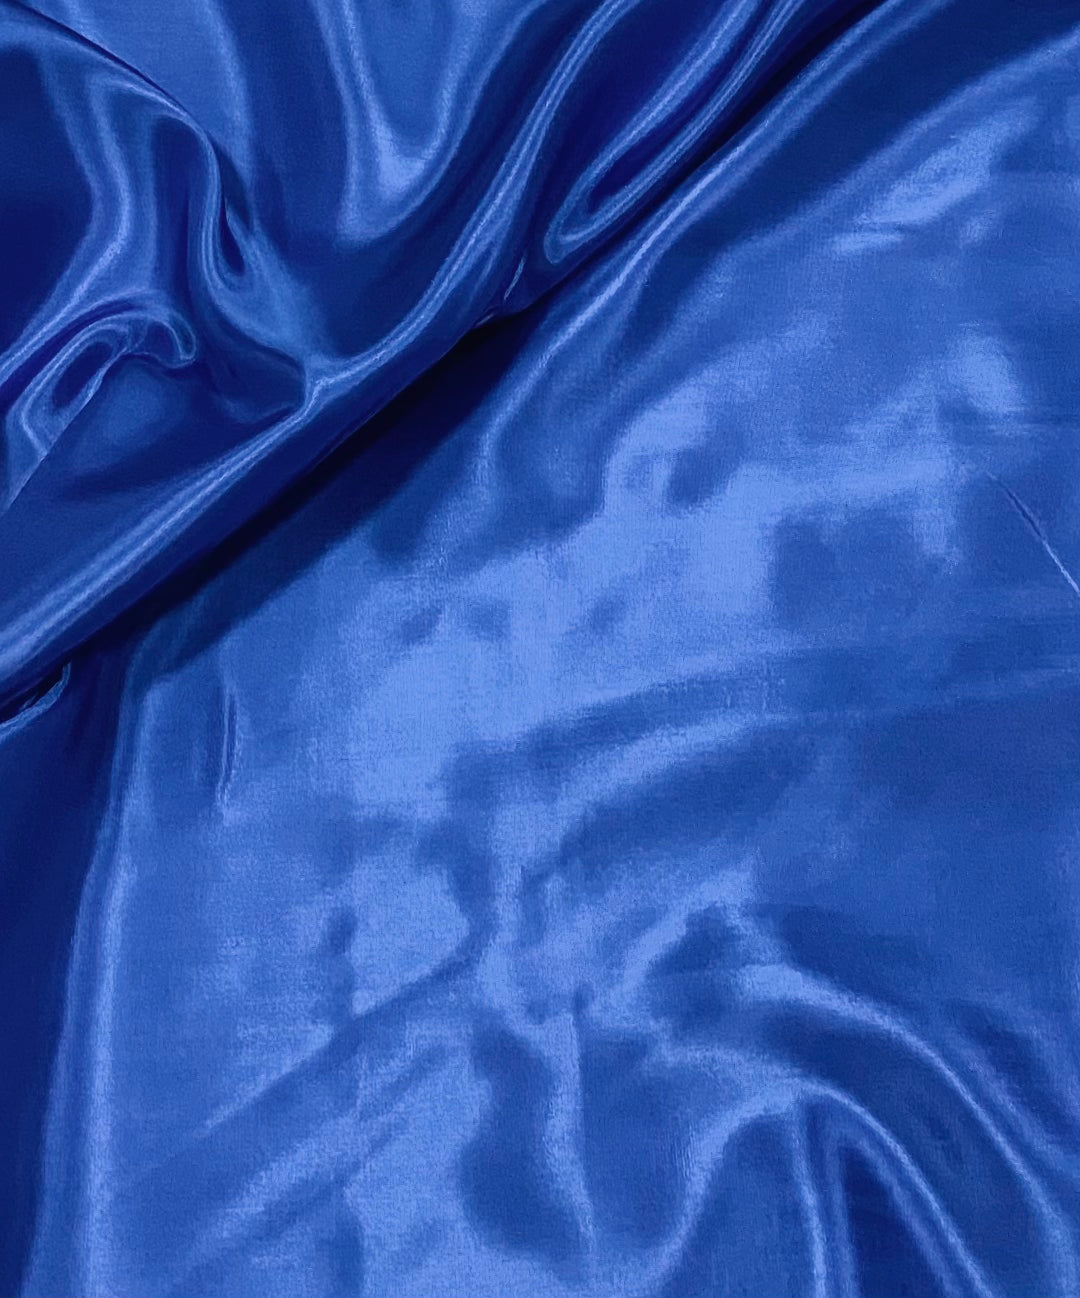 Lining material viscose royal blue